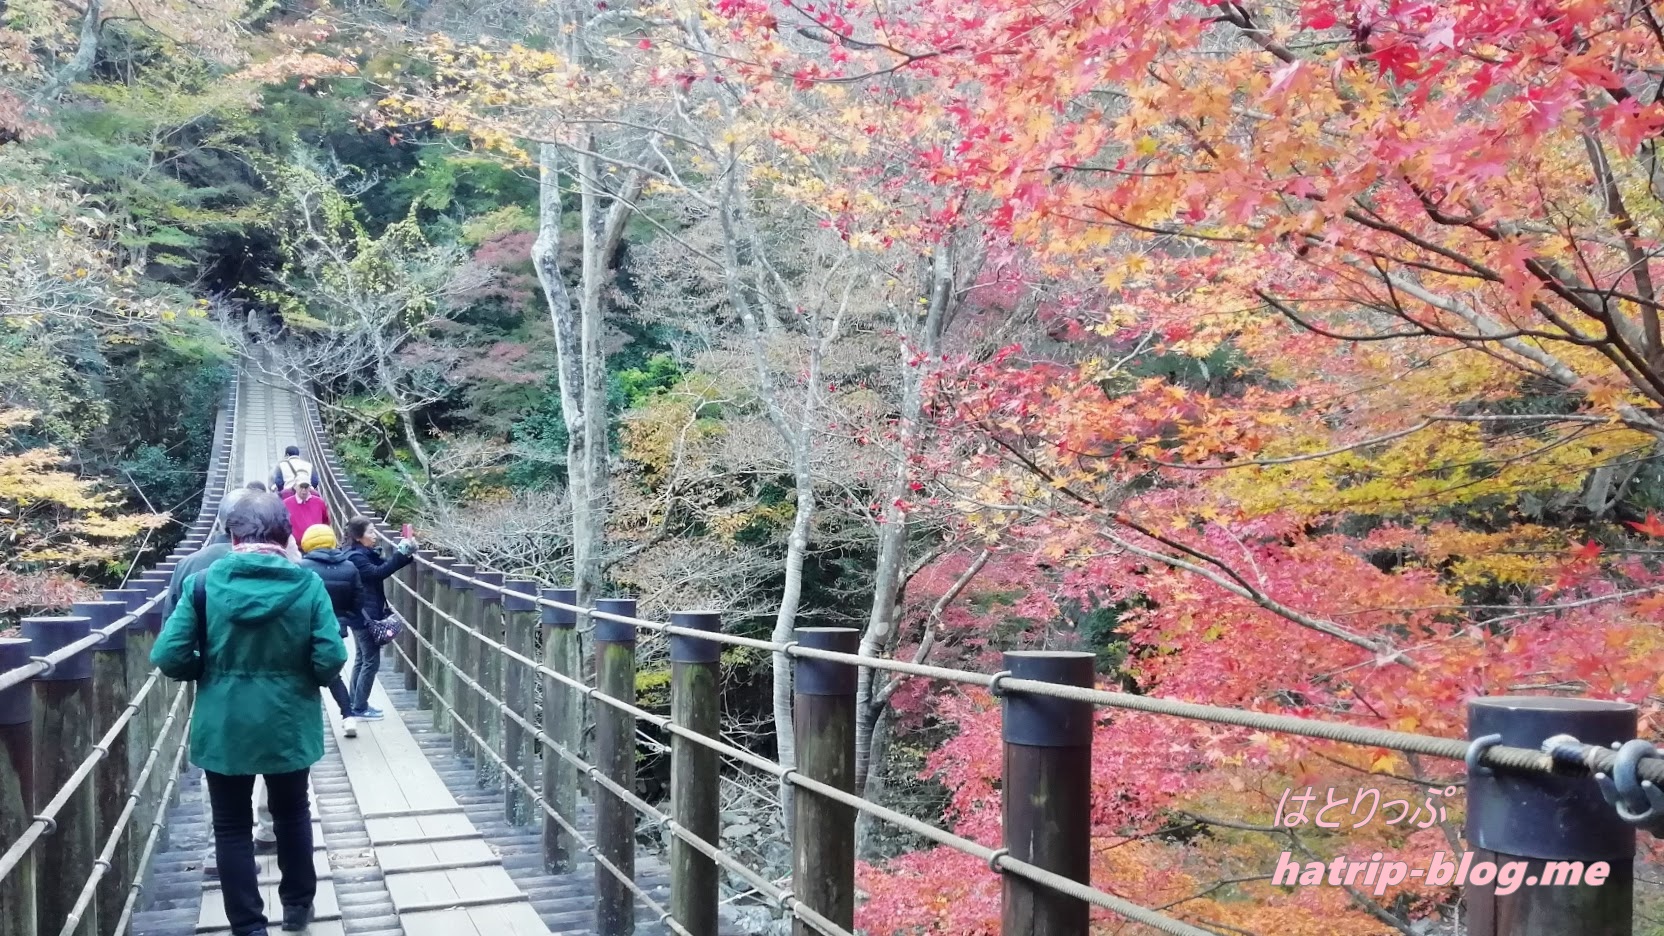 茨城県高萩市 花貫渓谷 の紅葉祭りで見頃時期の紅葉 汐見滝吊り橋 も散策 アクセス 行き方 駐車場 混雑状況など